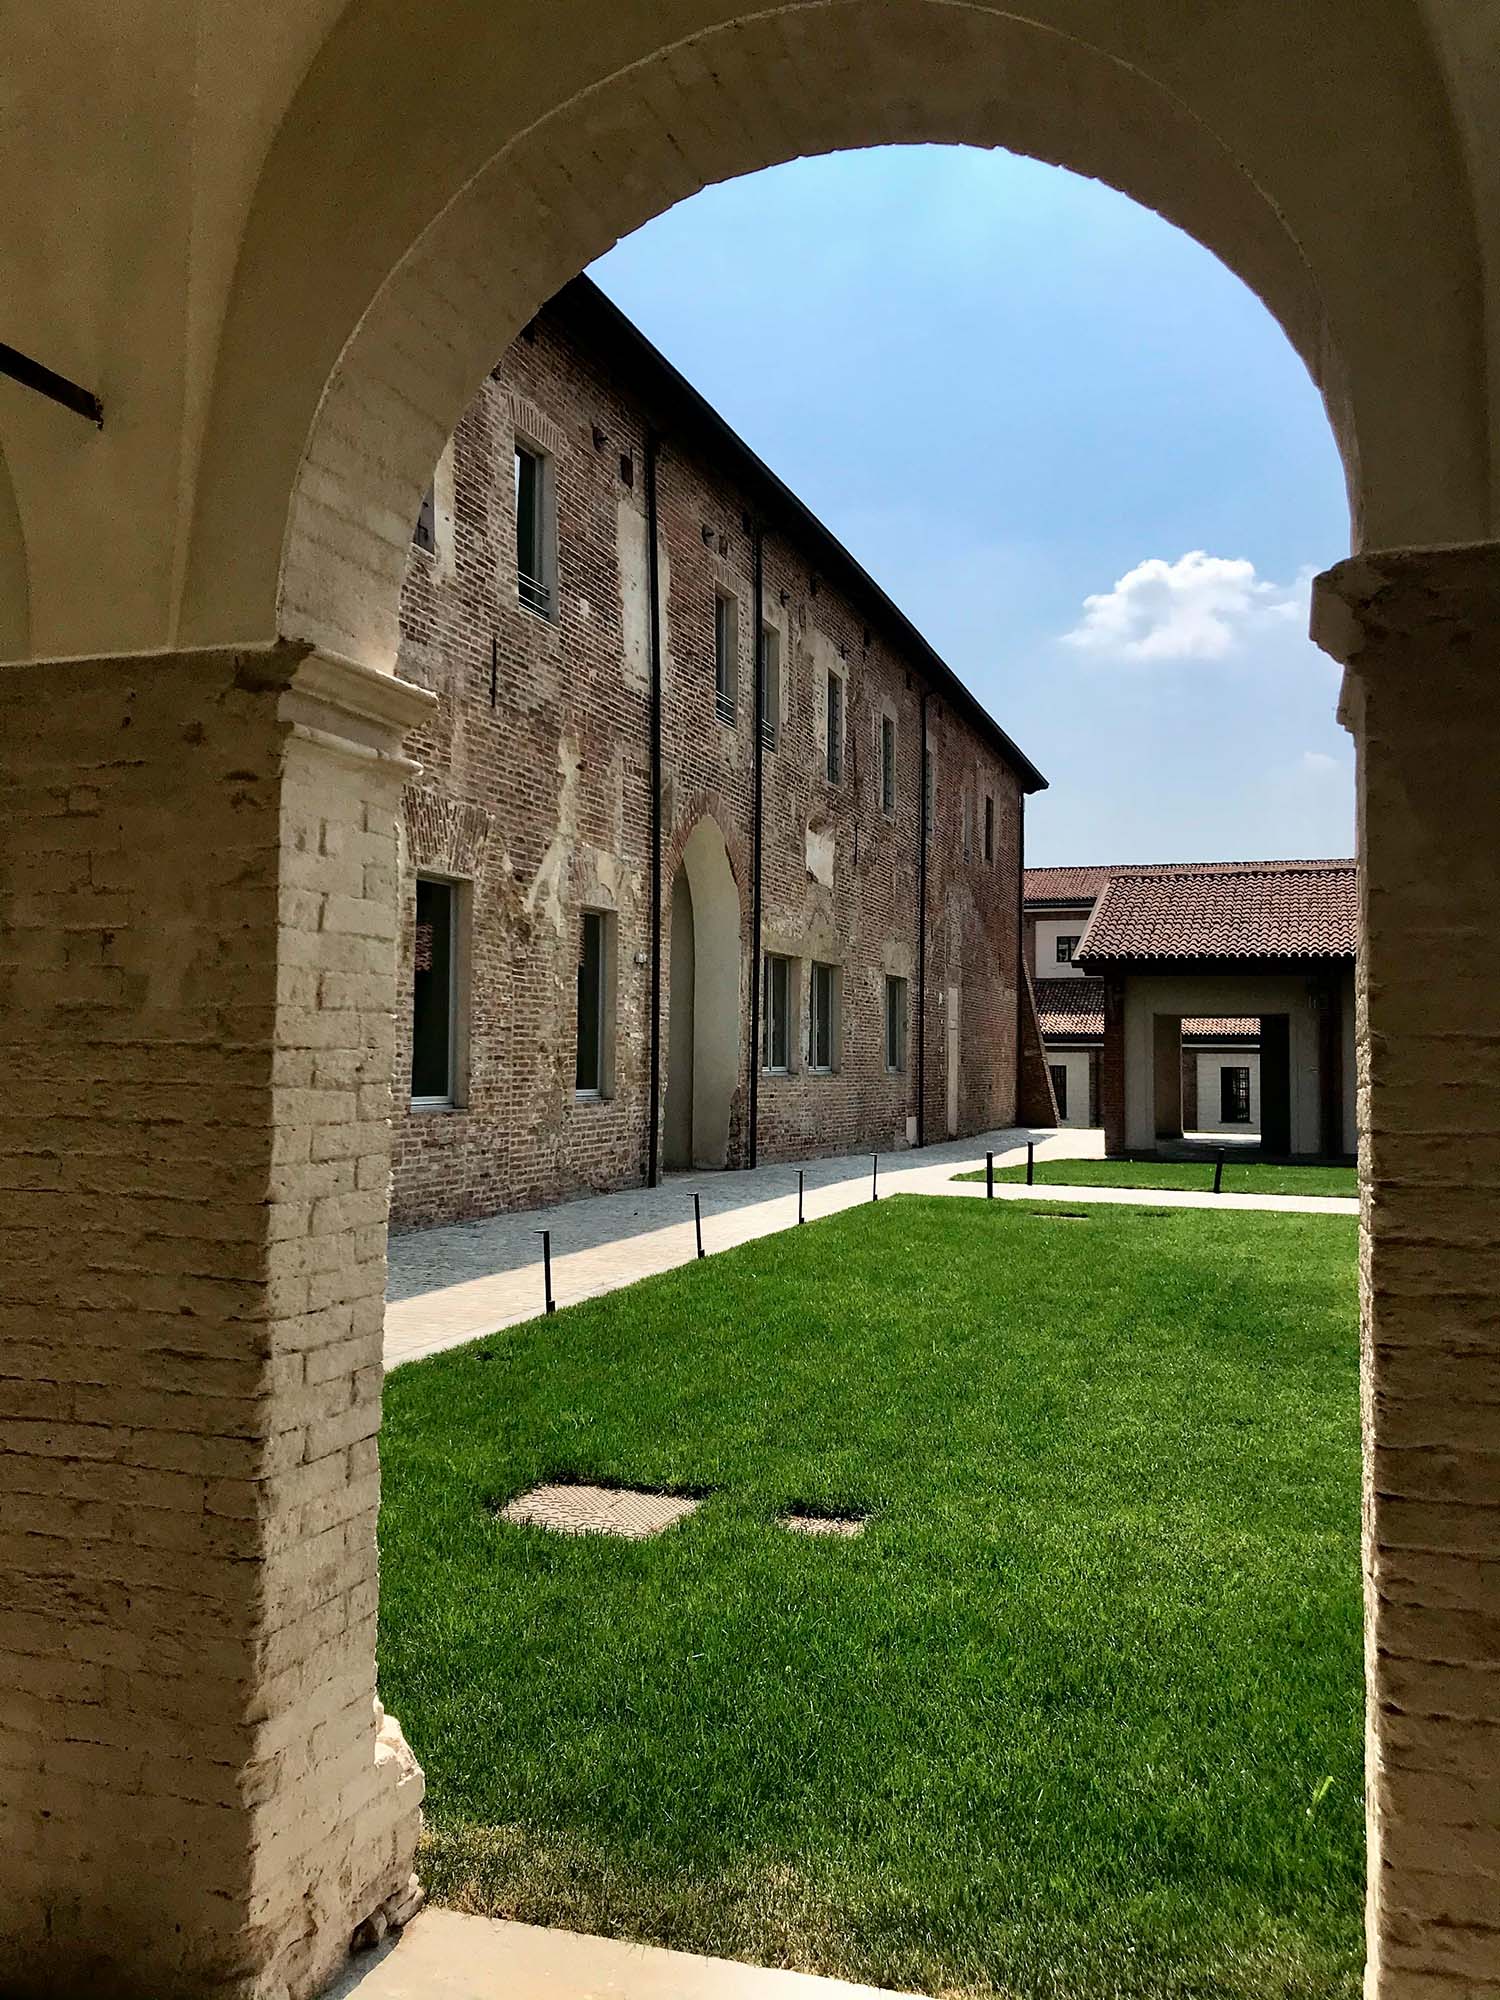 Nuovo campus dell’Università Cattolica a Cremona – Project and photos by Lamberto Rossi Associati